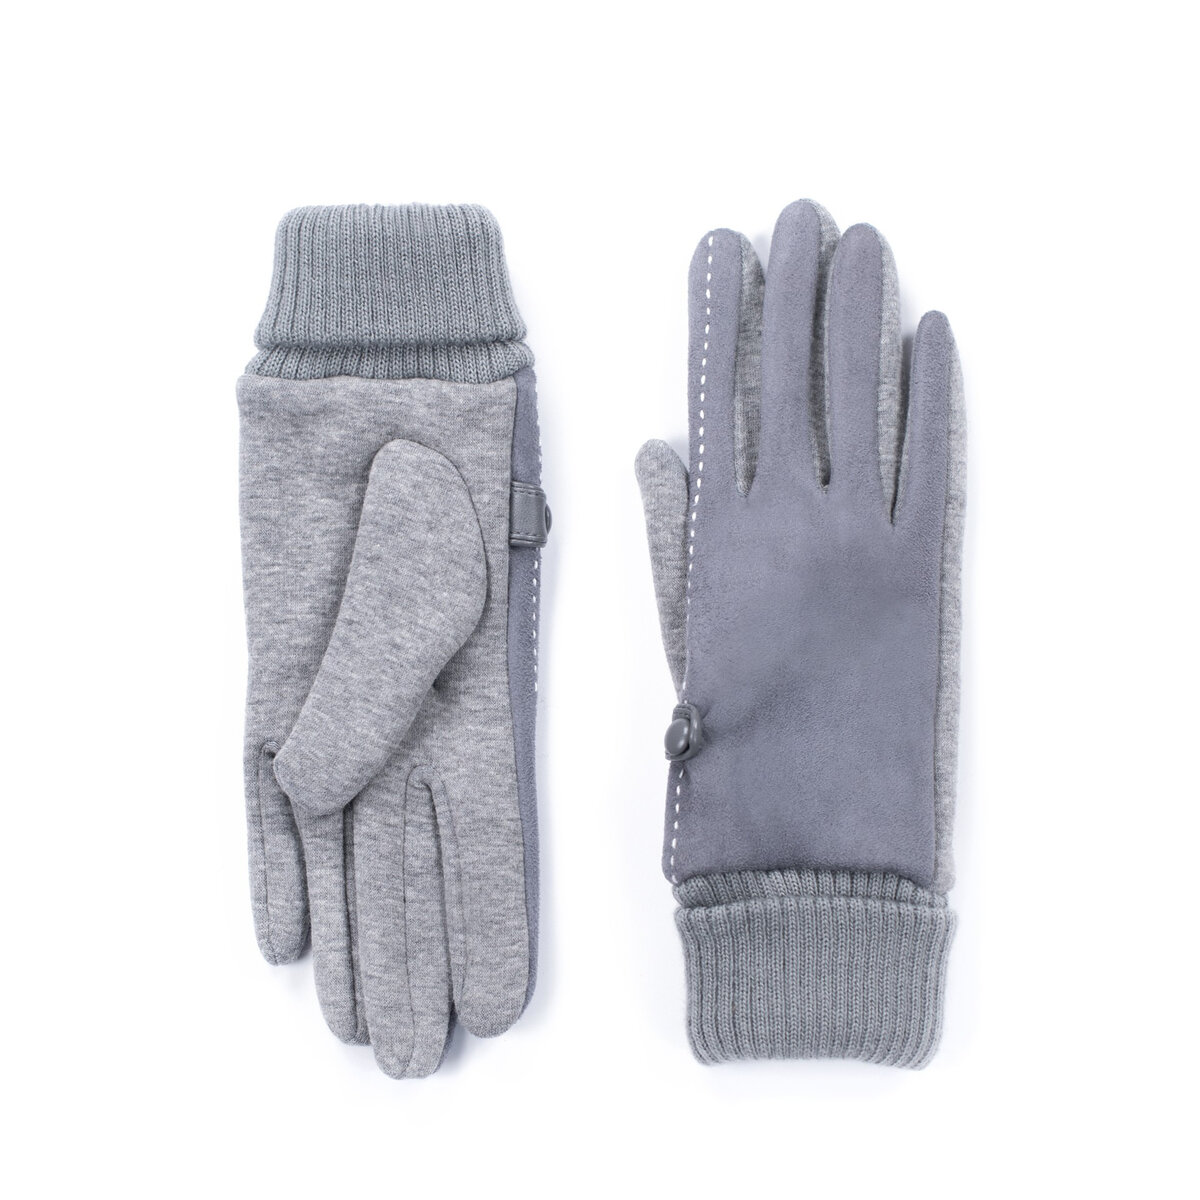 Šedé dámské zimní rukavice - Polo Elegance, one size i10_P67959_2:416_